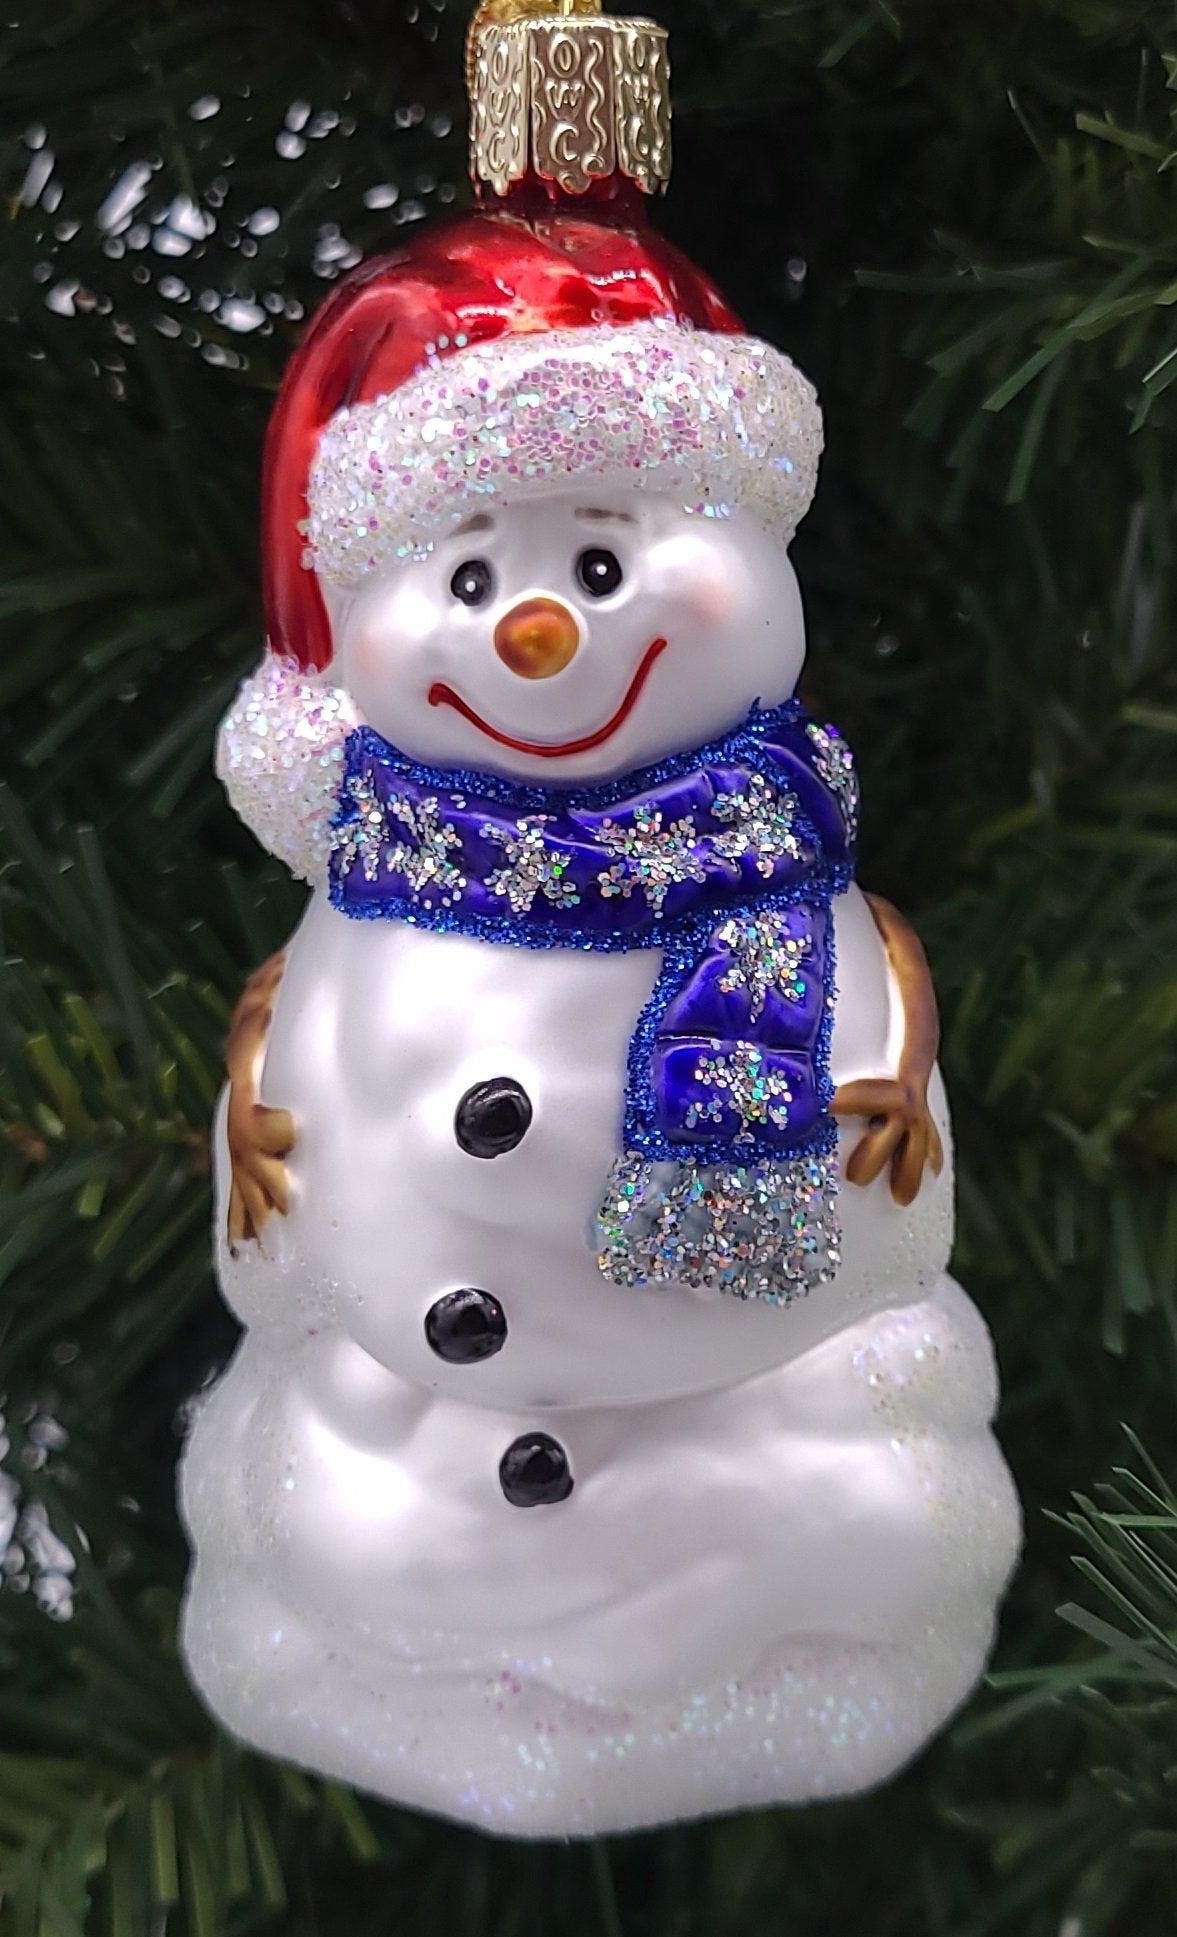 Lliurament de vidre bufat Bonic adorn de Nadal amb ninot de neu: decoració nadalenca del Mercat de Nadal de Schmidt